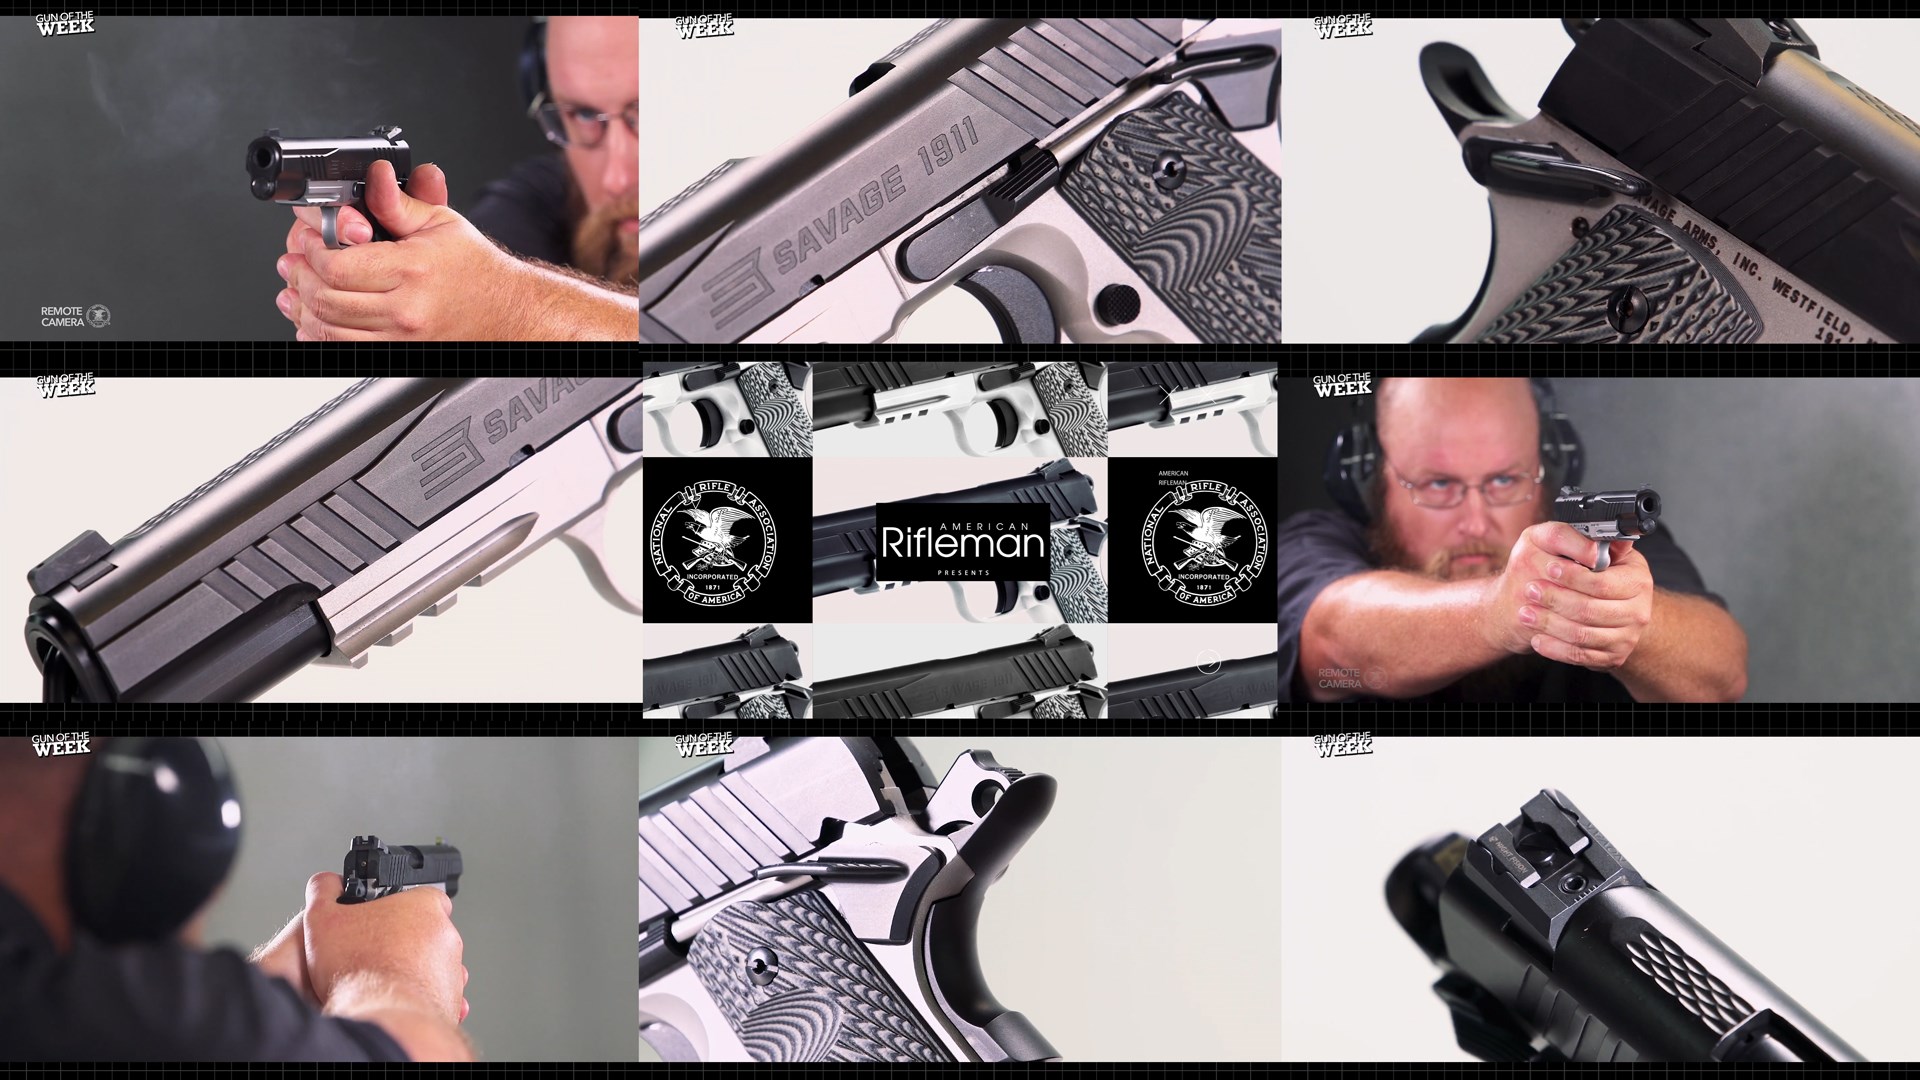 Savage M1911 Pistol GOTW gun of the week tiles mosaic 9 images stacked showing gun details man shooting indoor range